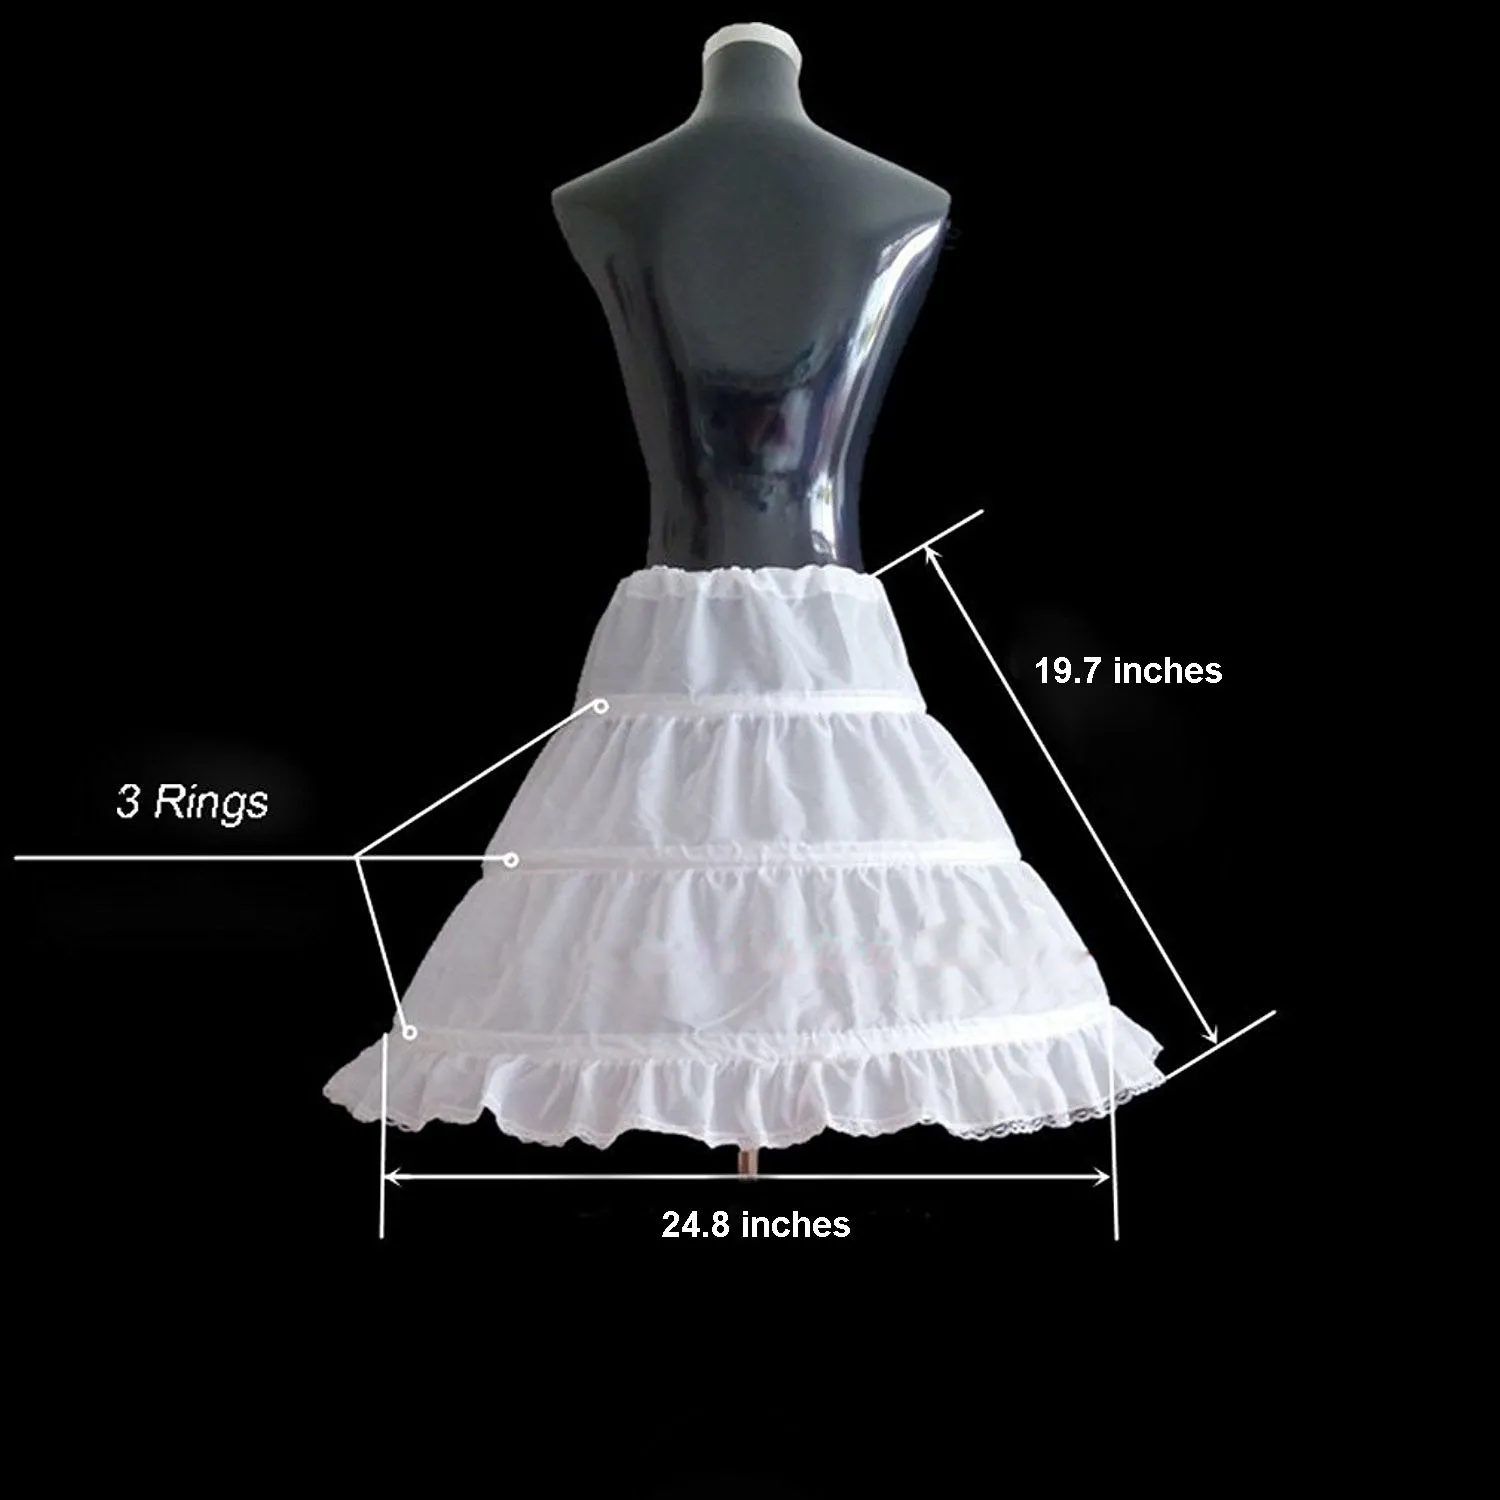 2019 New Arrival Aline 3 Rings Petticoat High Quality Underskirt For Wedding Children Half Slips Flower Girls Dresses Princess Pe4751690